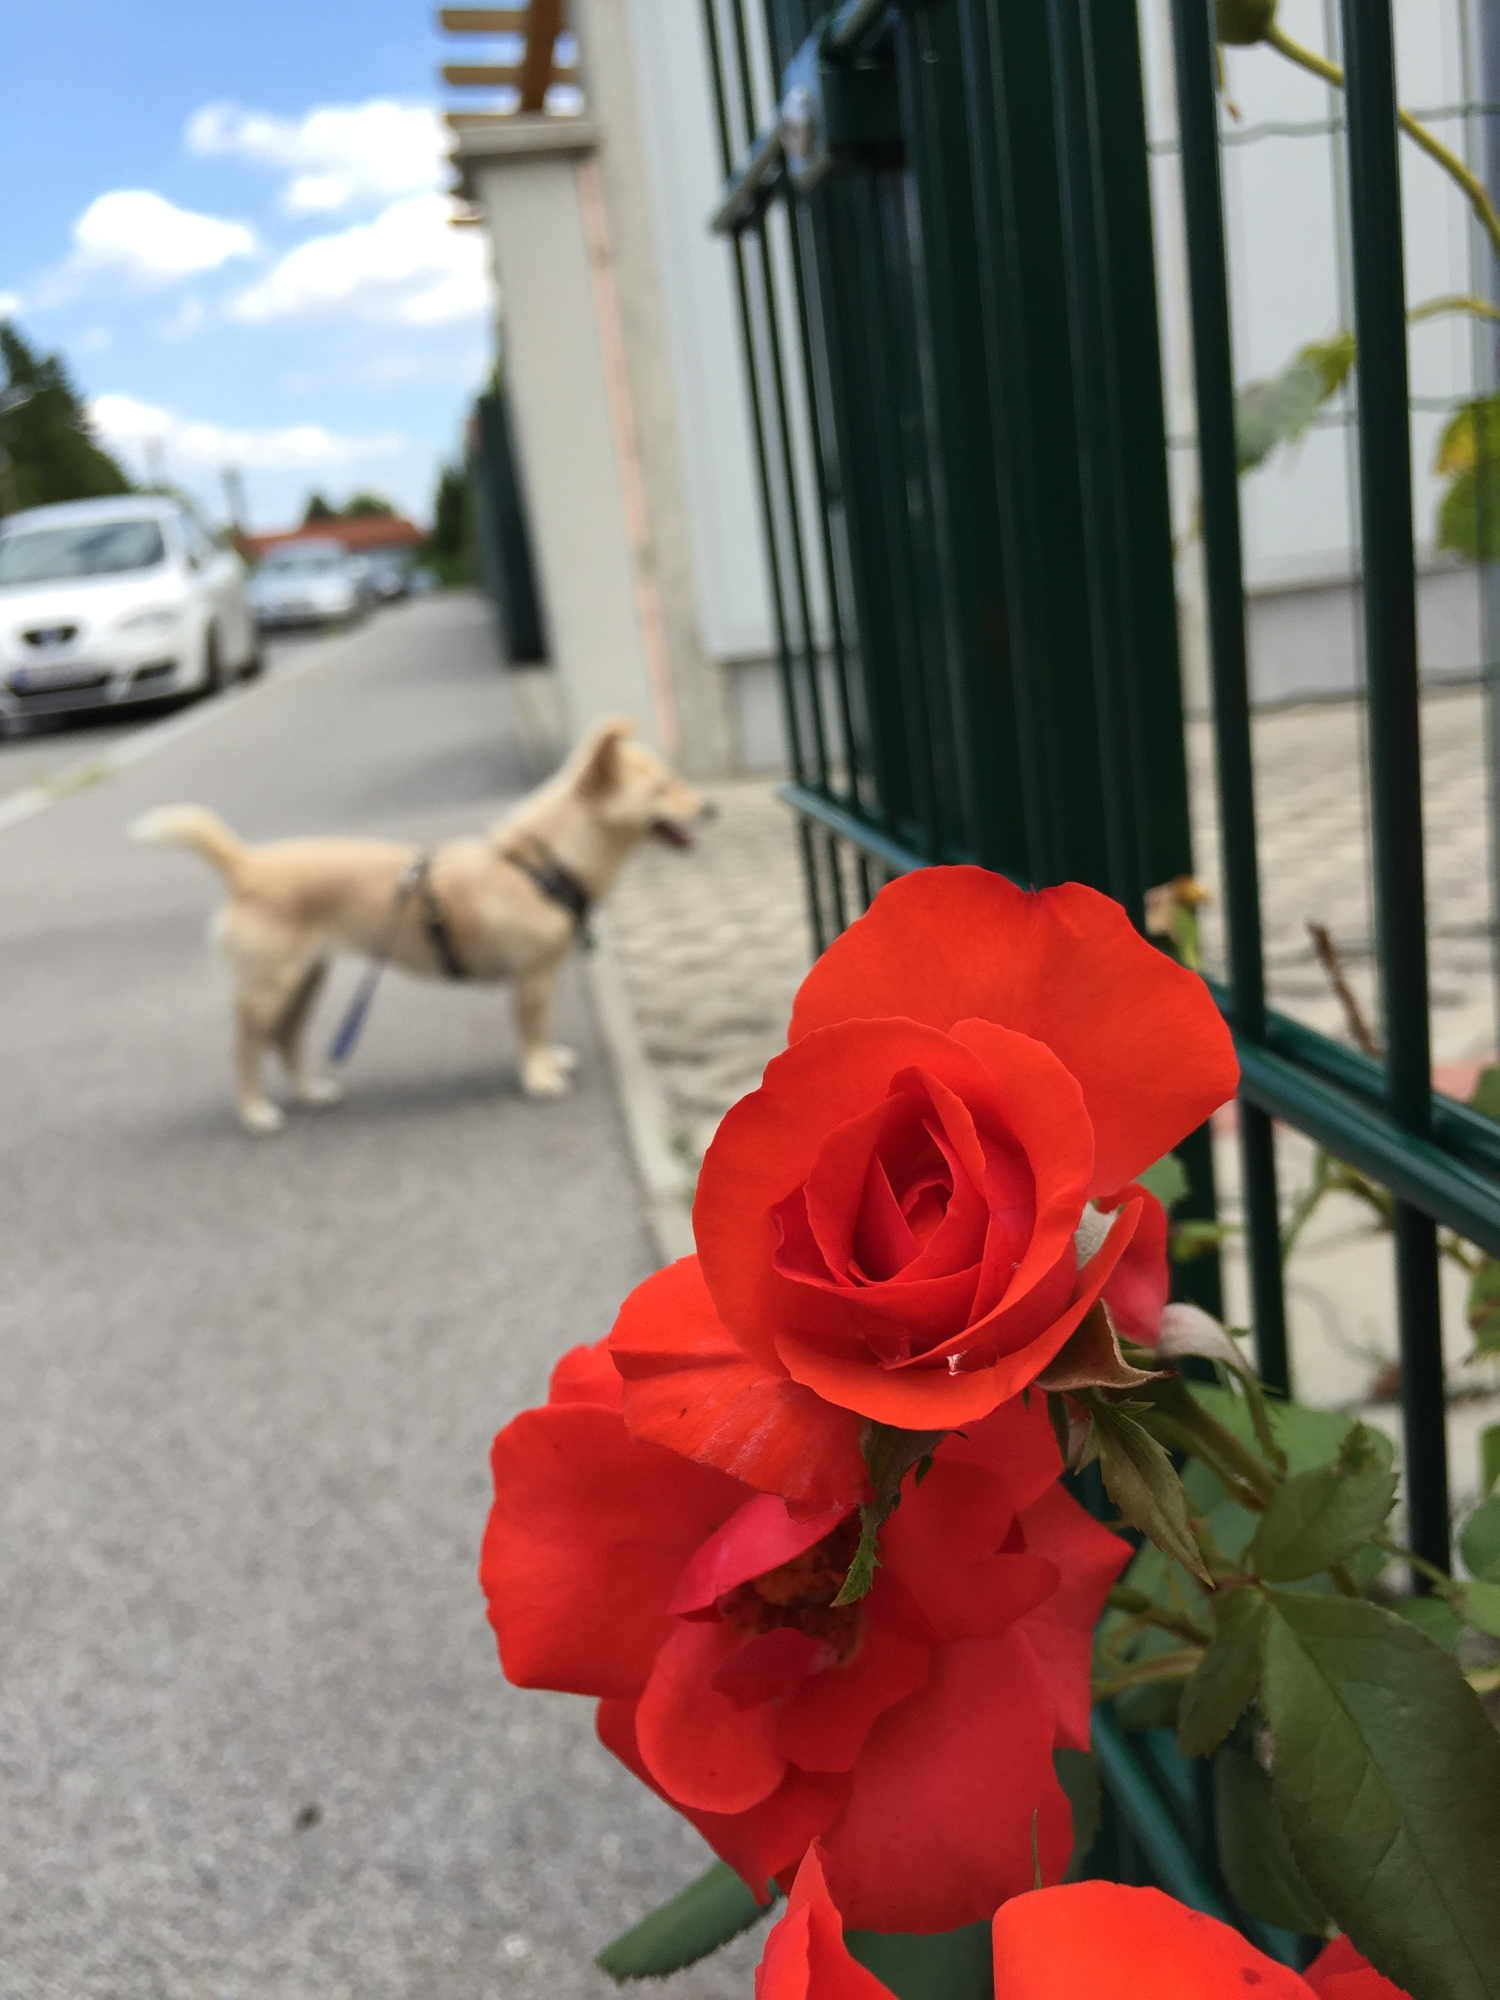 Rosen ranken sich durch den Zaun, den Hund interessiert etwas anderes